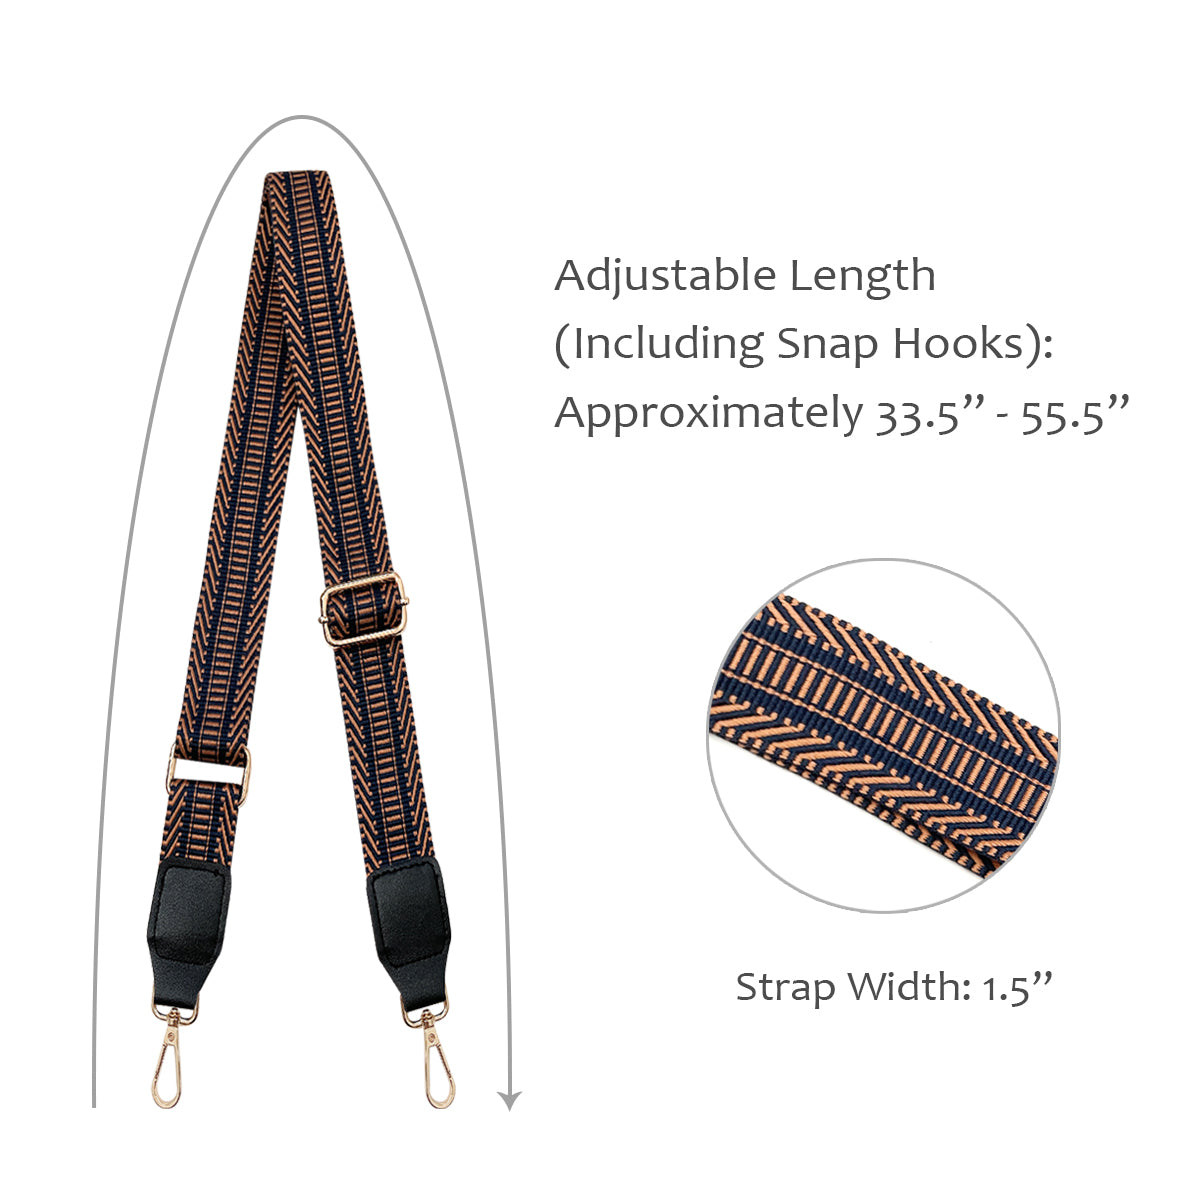 1.5 Inches Wide Adjustable Purse Strap Crossbody Bag Strap Handbag